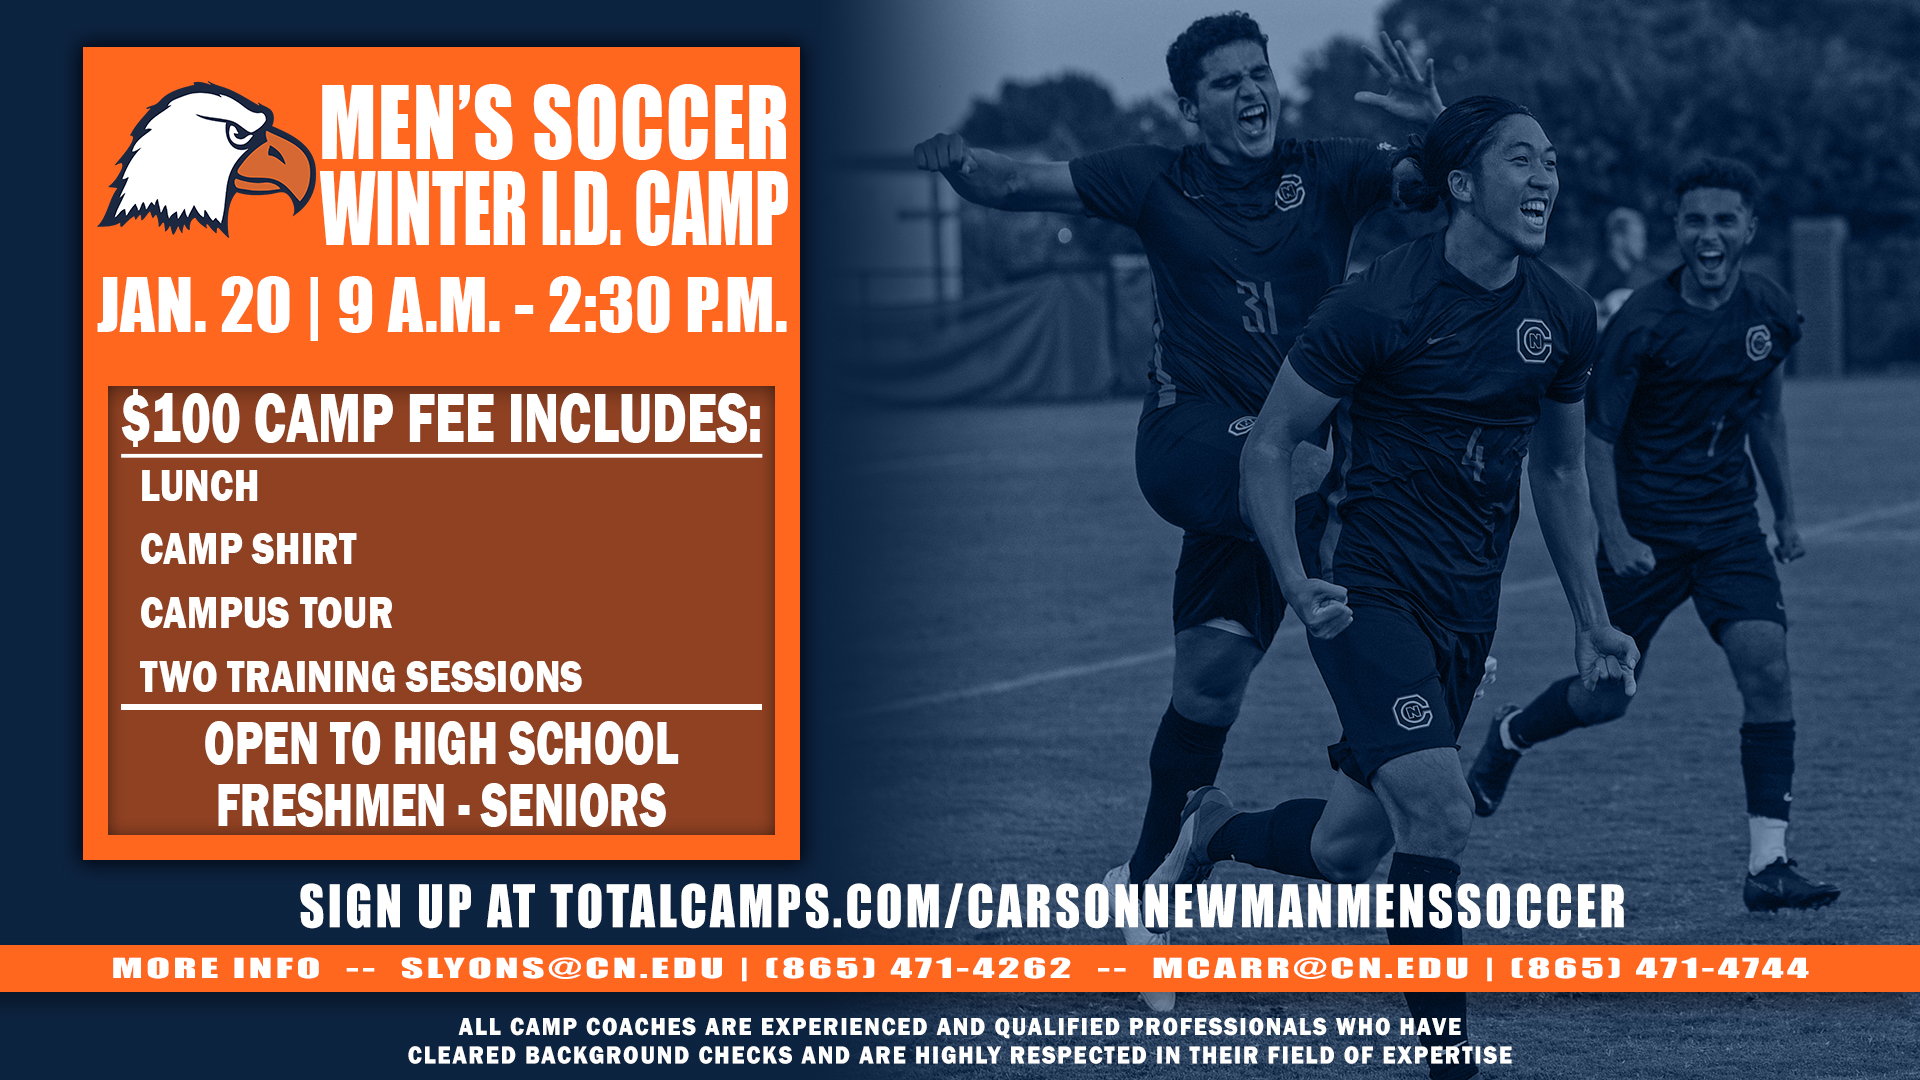 Men's soccer Winter I.D. Camp set for January